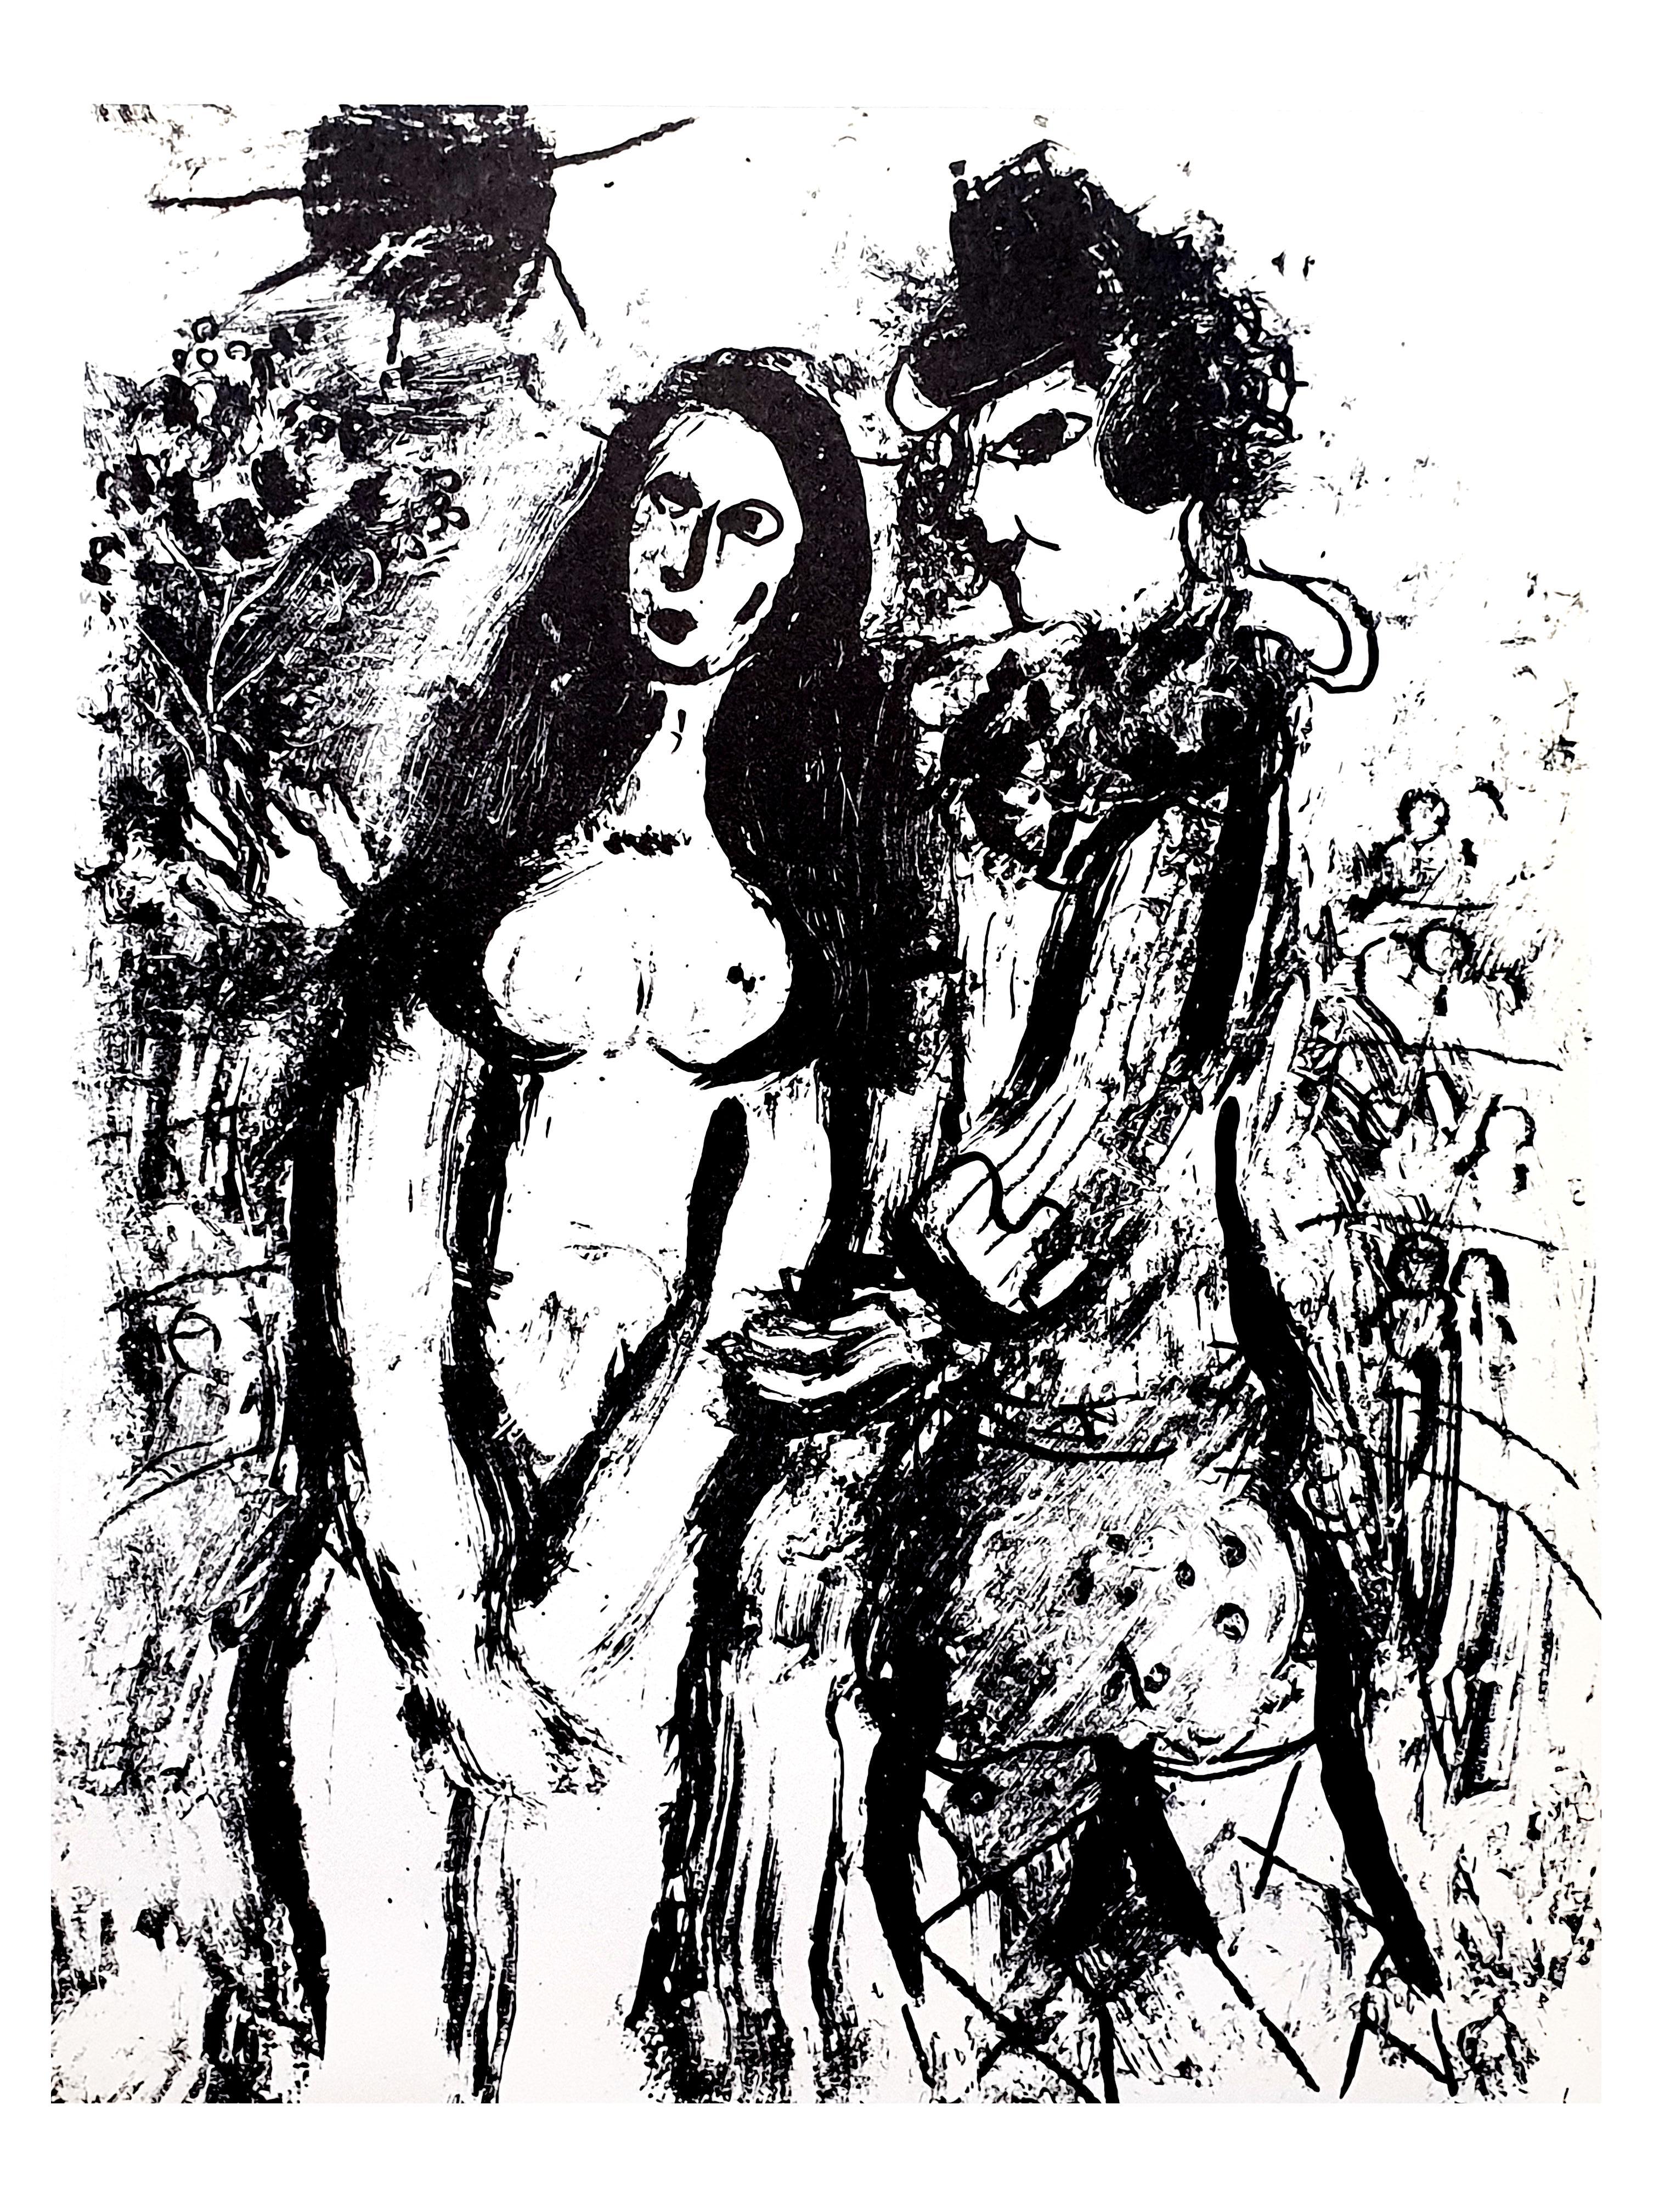 Marc Chagall
Original-Lithographie
1963
Abmessungen: 32 x 24 cm
Unsigniert, wie in "Chagall Lithographe 1957-1962" veröffentlicht. VOLUME II"
Auflage von mehreren tausend Stück
Zustand: Ausgezeichnet

Marc Chagall  (geboren 1887)

Marc Chagall wurde